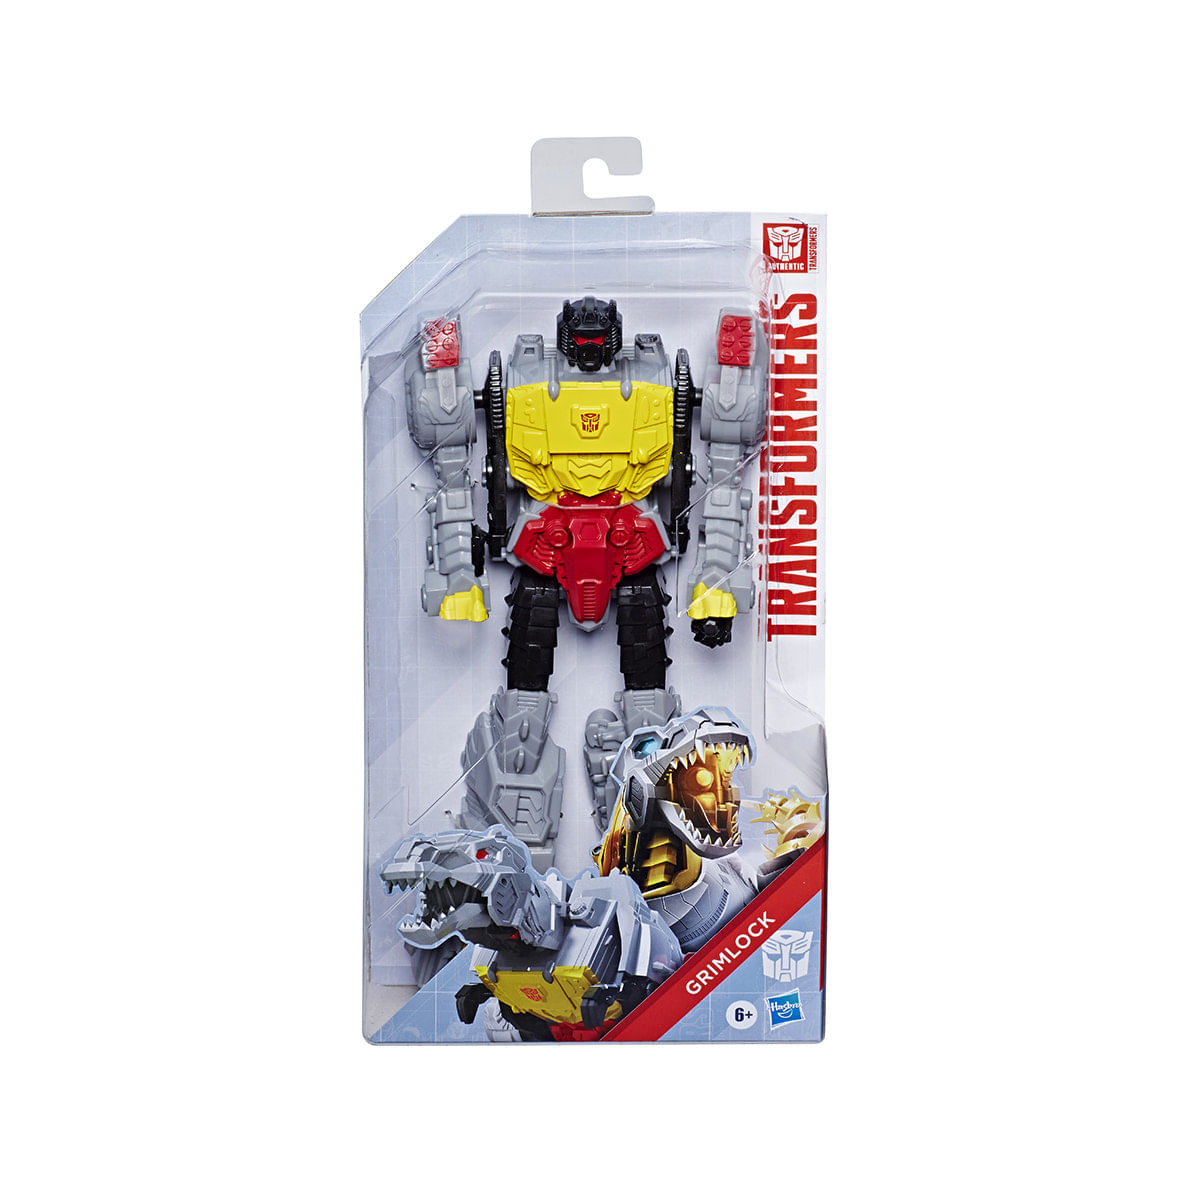 6094333_Boneco-Grimlock-Hasbro-Transformers_3_Zoom